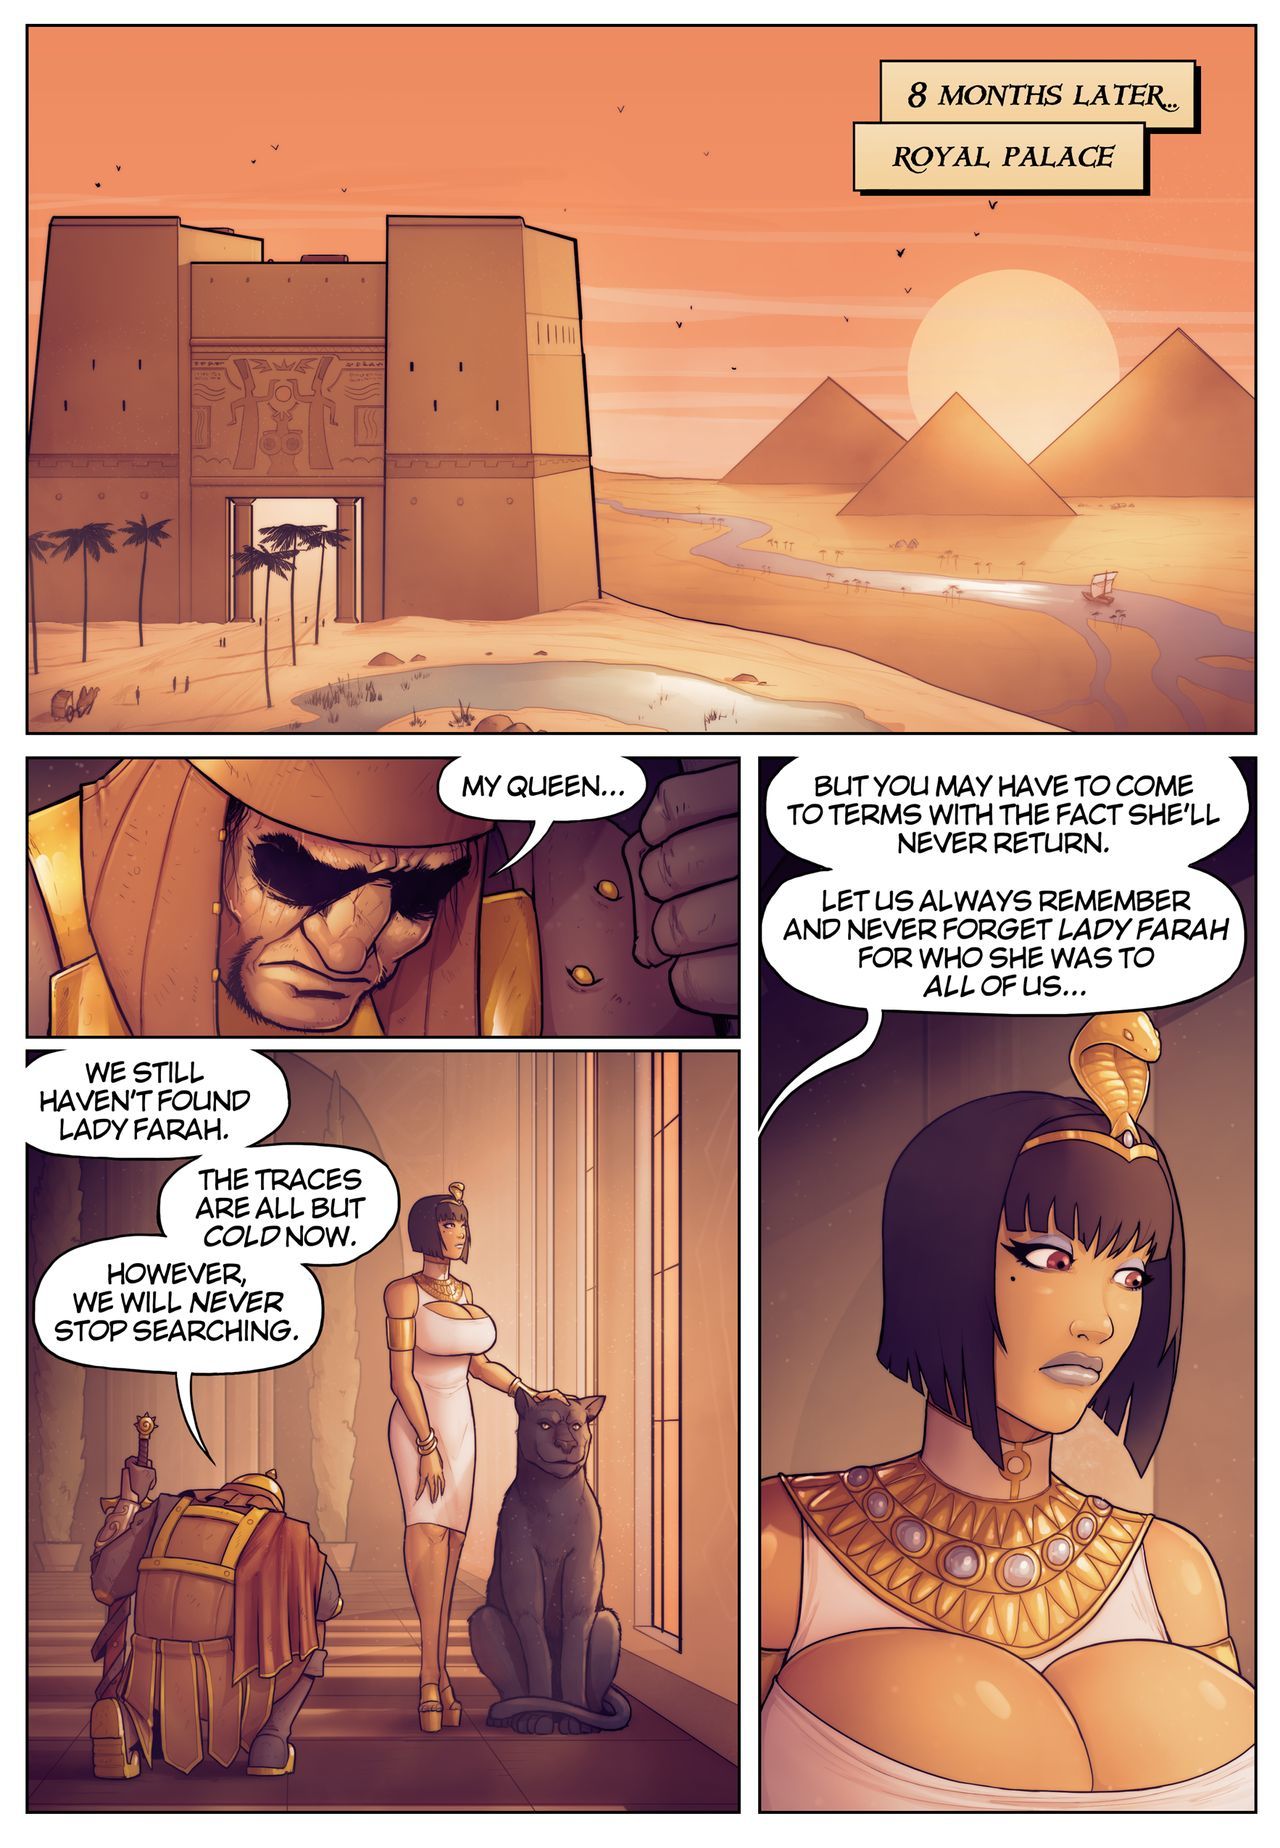 legende van koningin opala verhalen van pharah: in De schaduw van anubis*